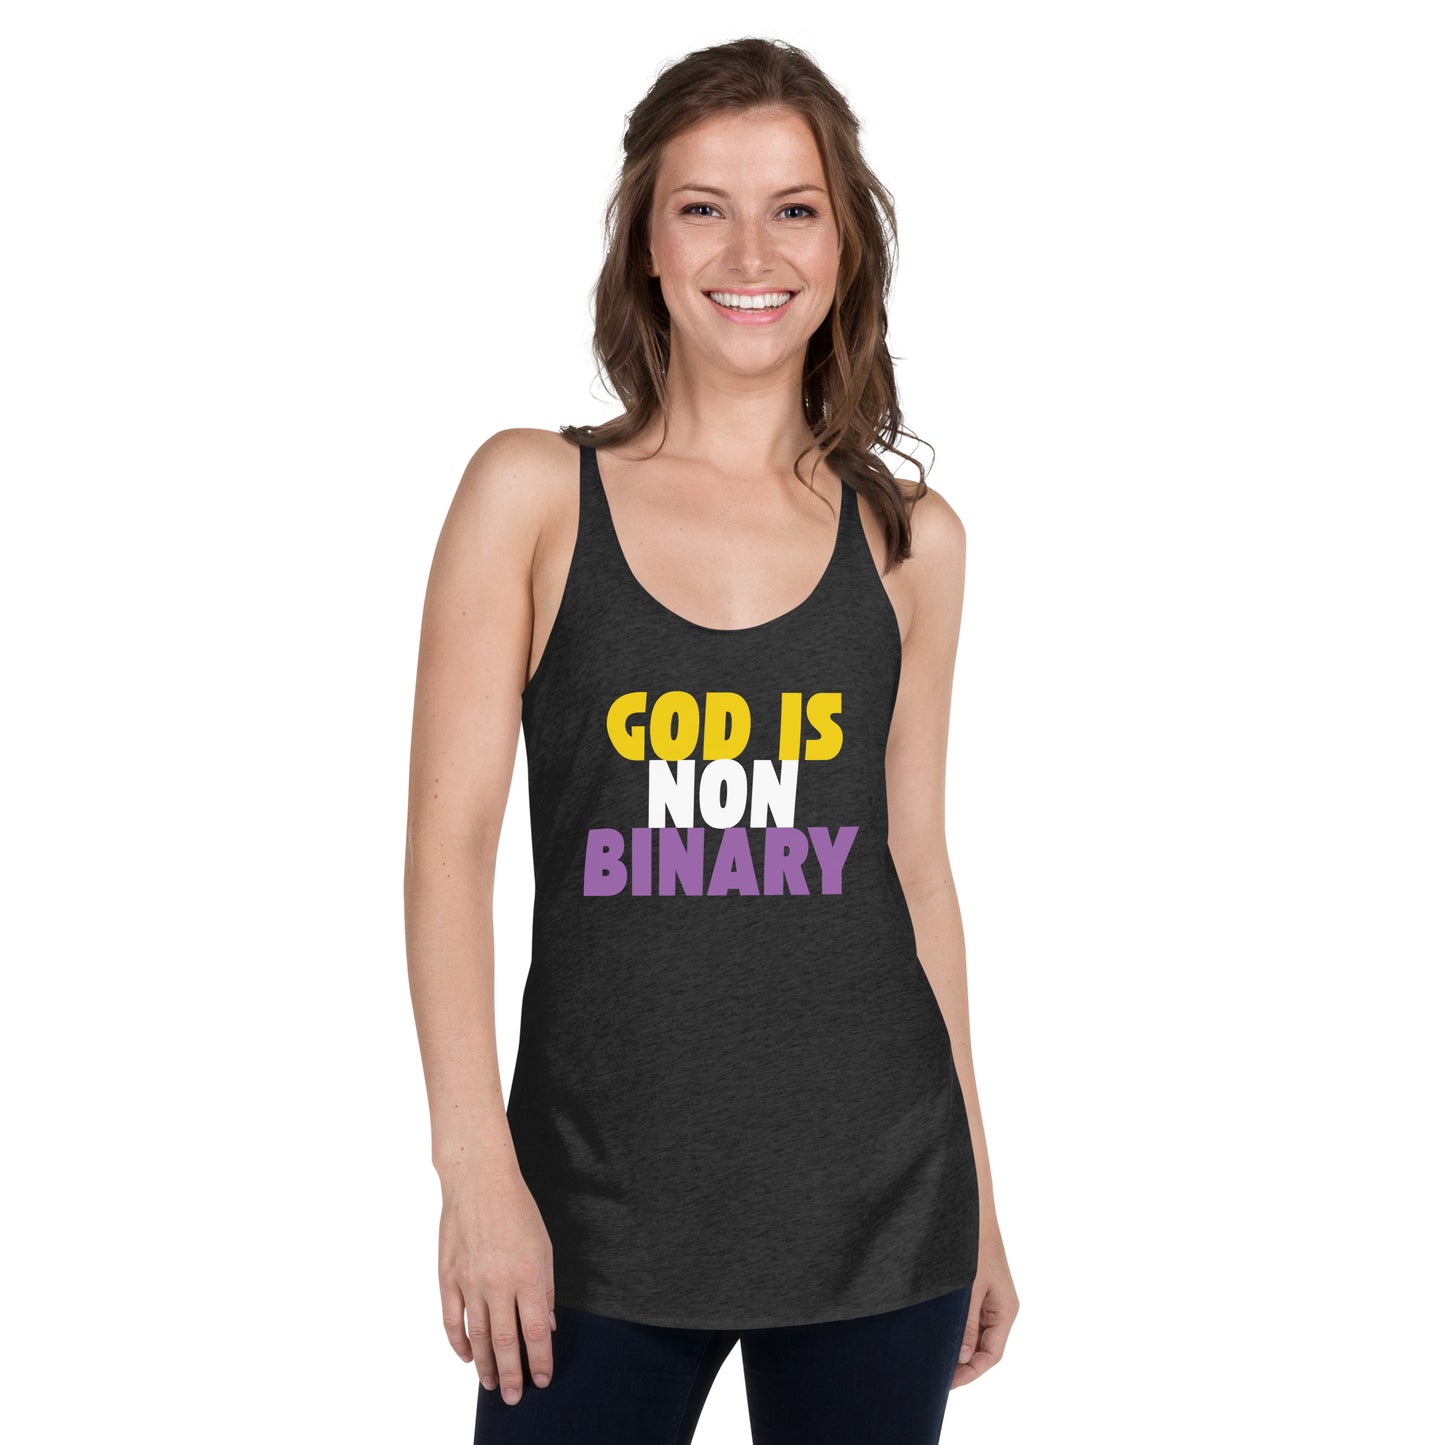 God is Nonbinary - Women's Racerback Tank